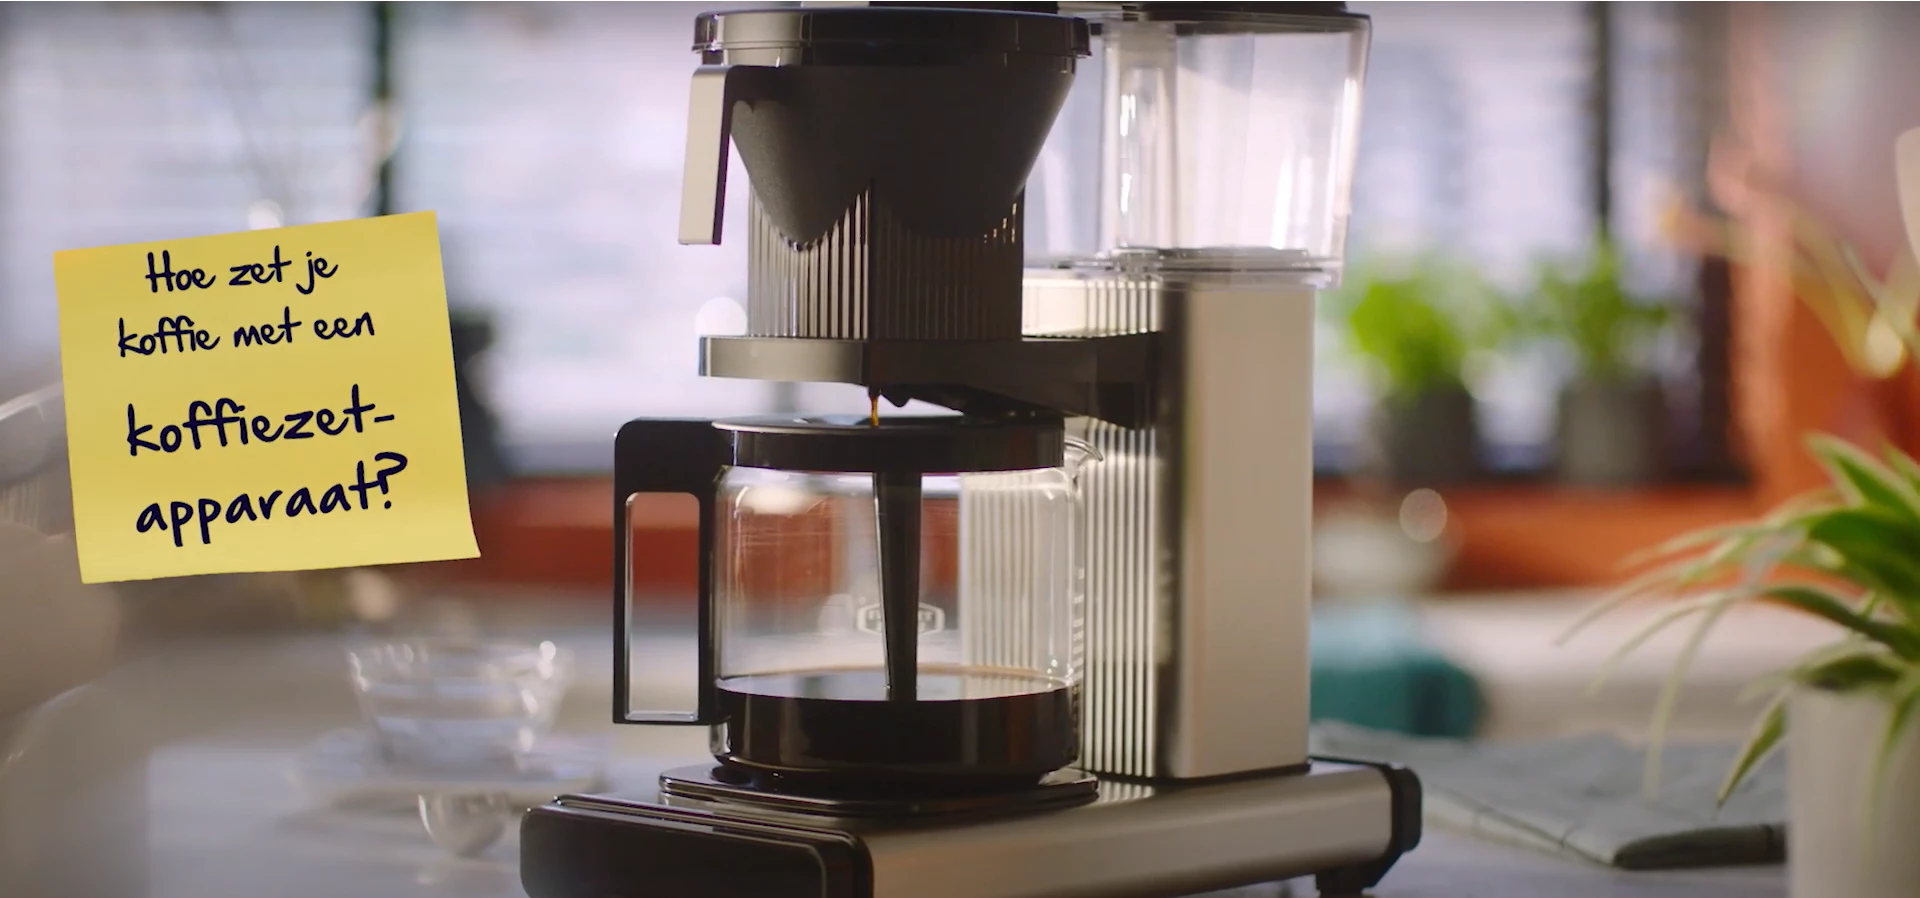 Foto van een koffiezeteapparaat met de tekst: Hoe zet je koffie met een koffiezetapparaat